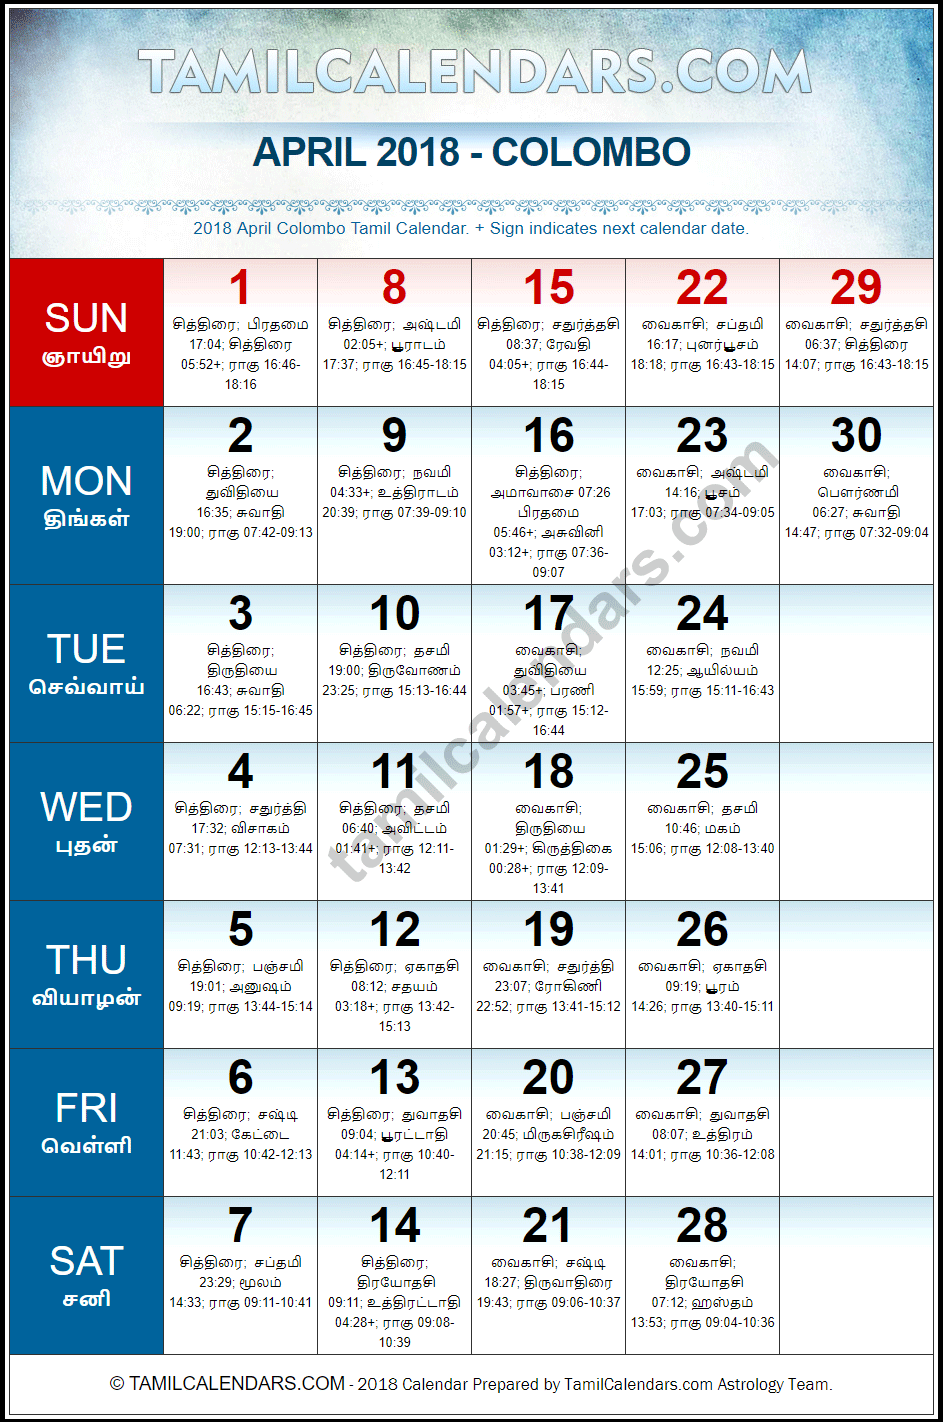 April 2018 Tamil Calendar for Sri Lanka (Colombo)